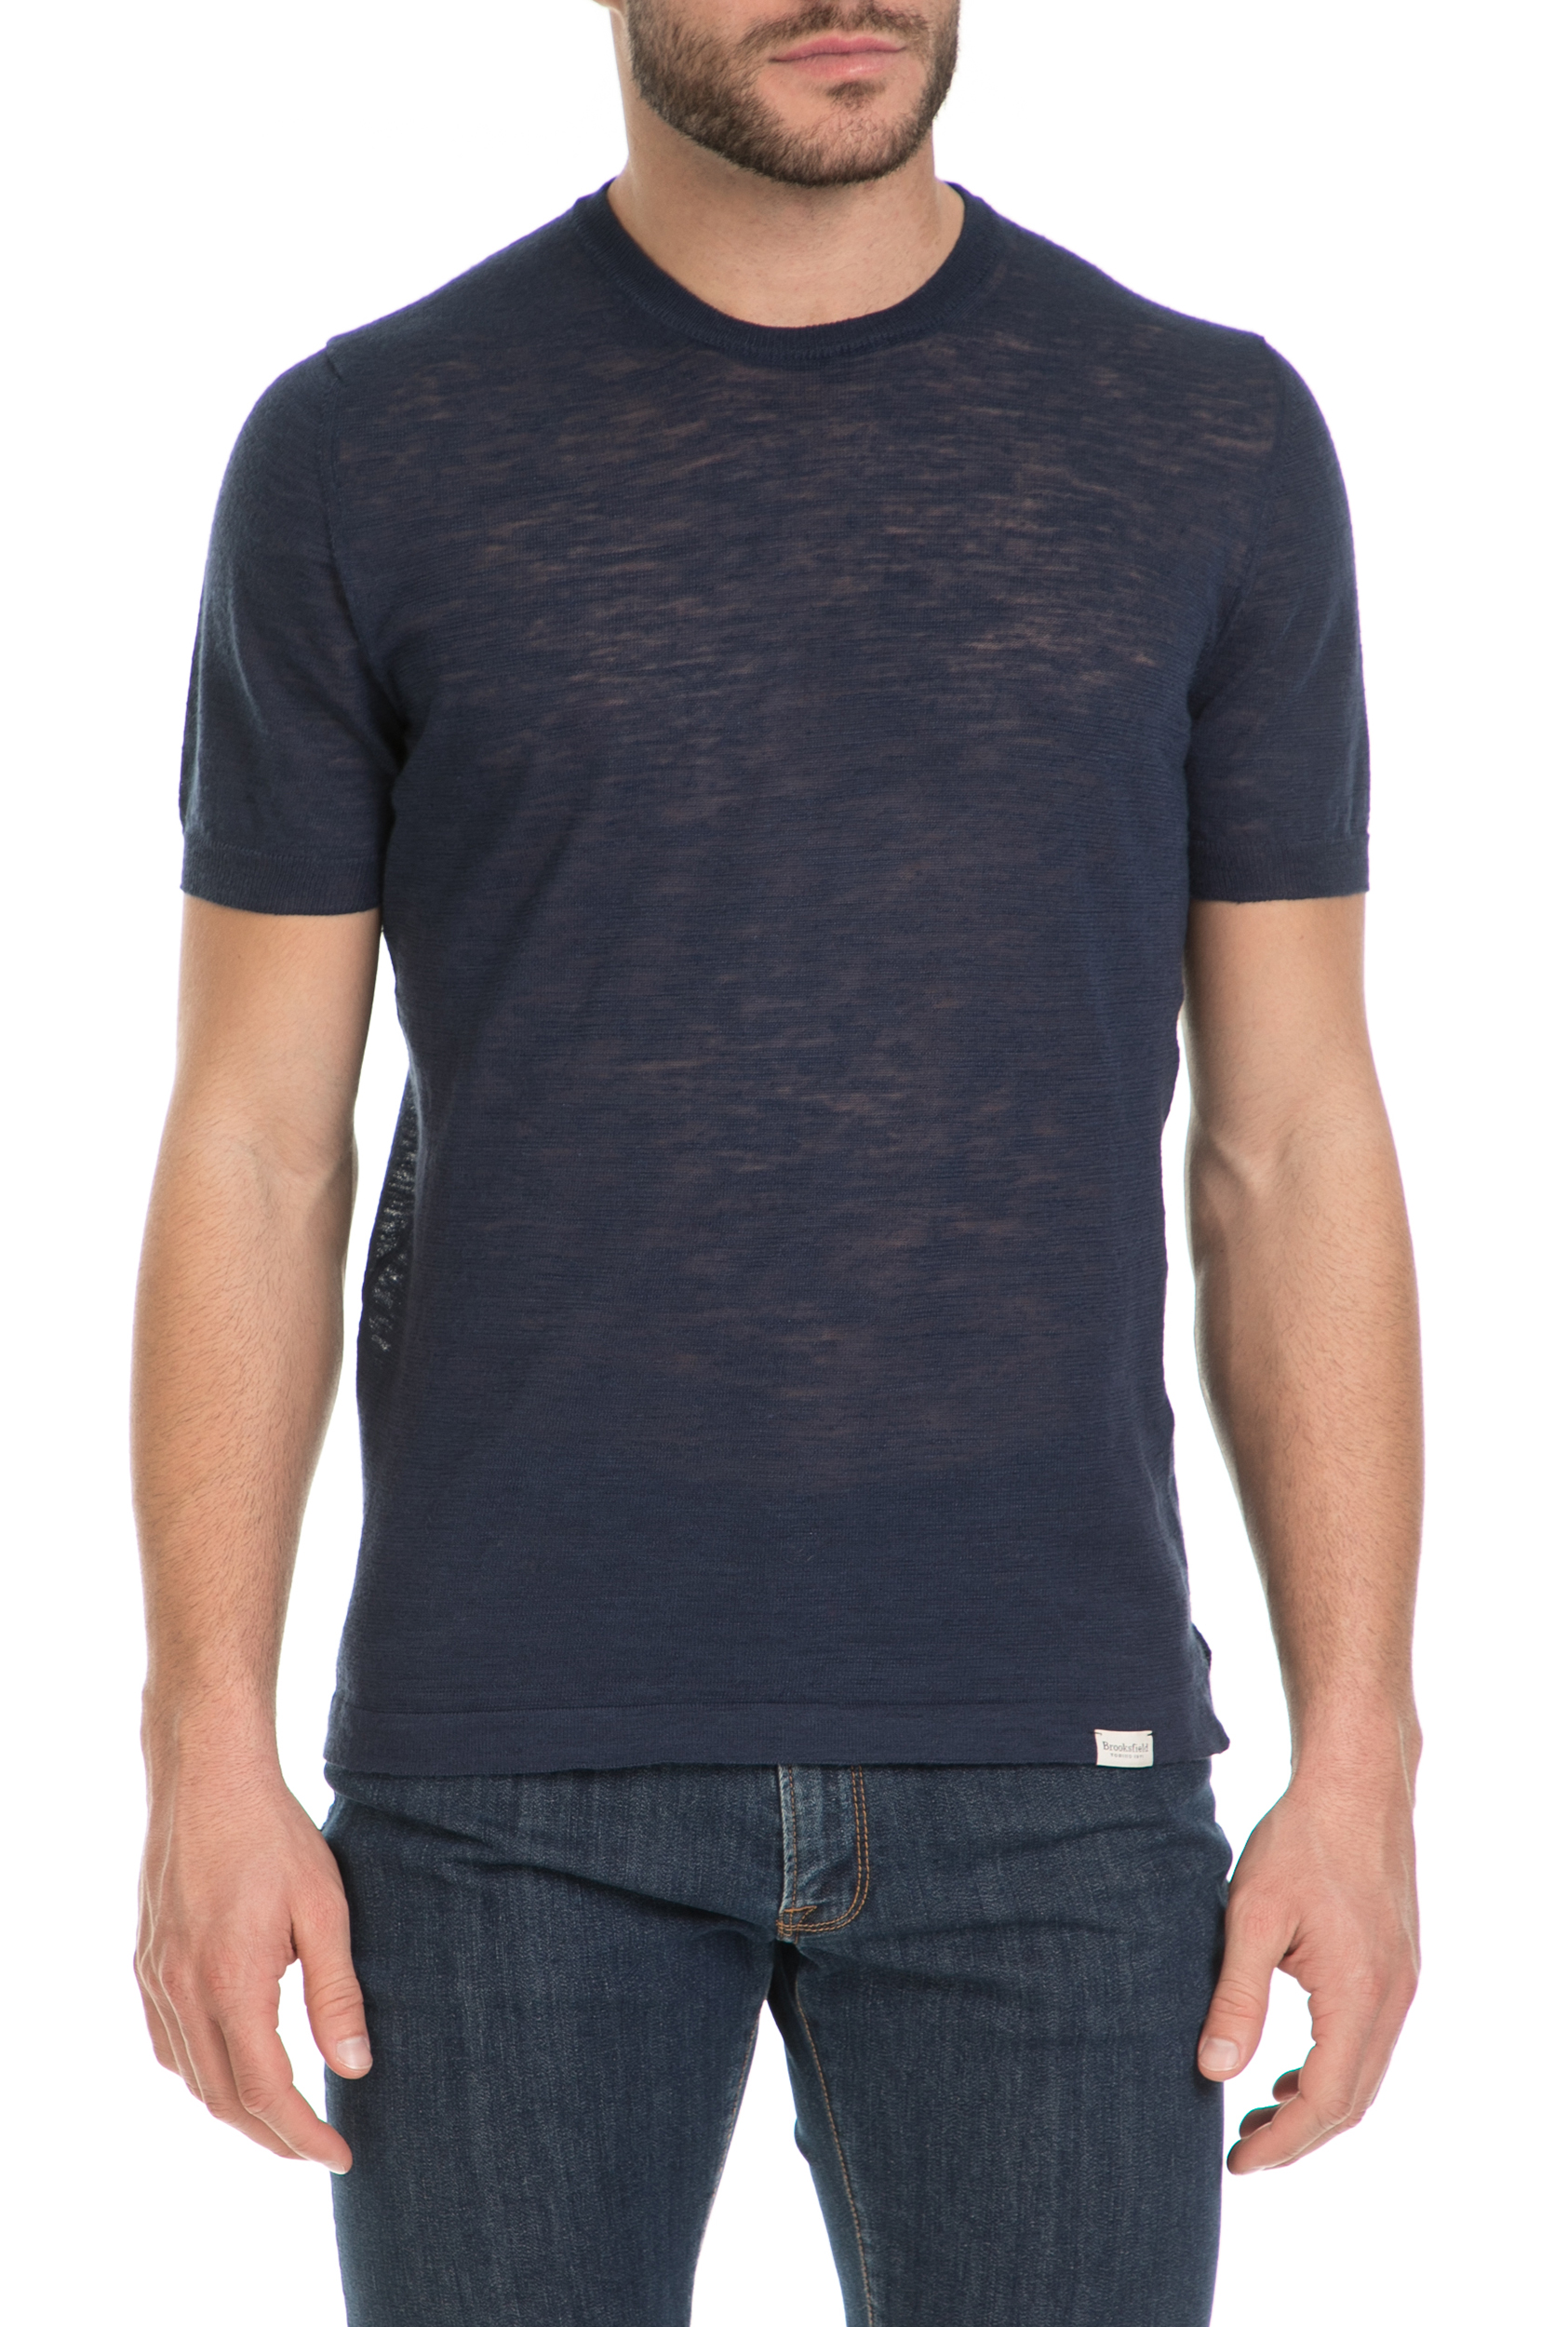 Ανδρικά/Ρούχα/Μπλούζες/Κοντομάνικες BROOKSFIELD - Ανδρική κοντομάνικη μπλούζα Brooksfield μπλε